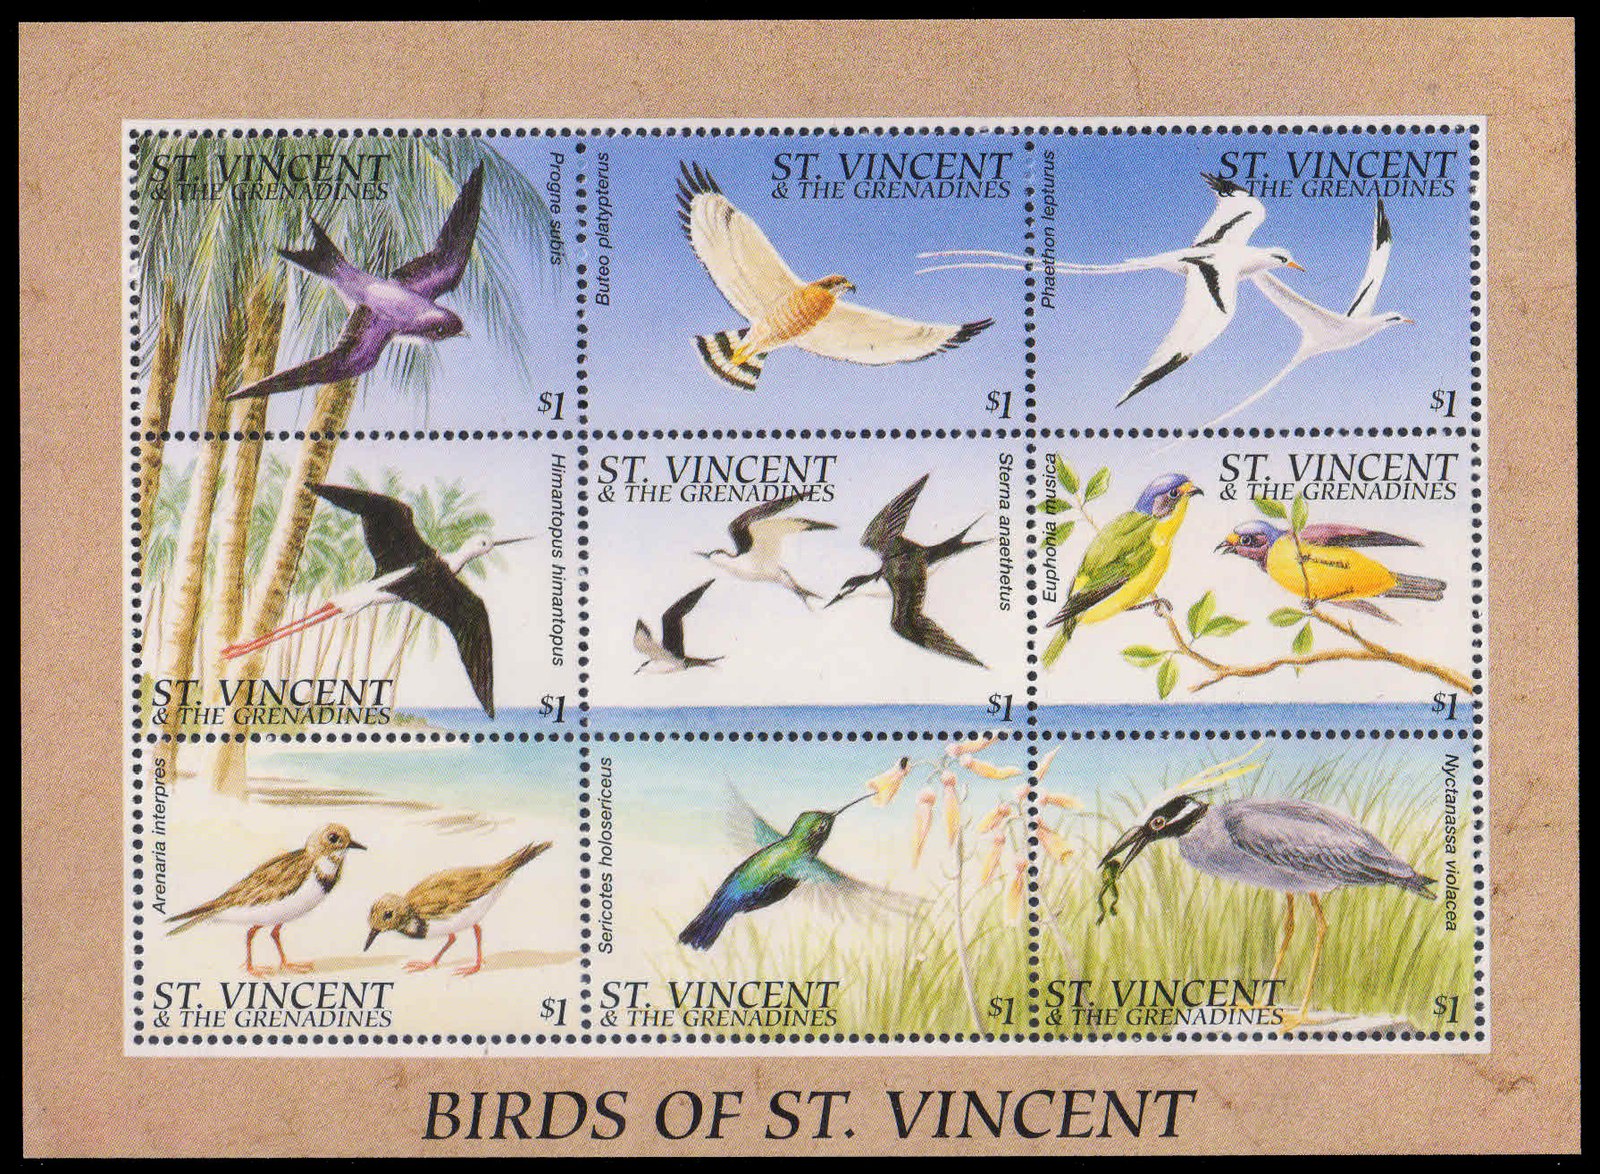 St. Vincent 1996-Birds, Sheet of 9 Stamps